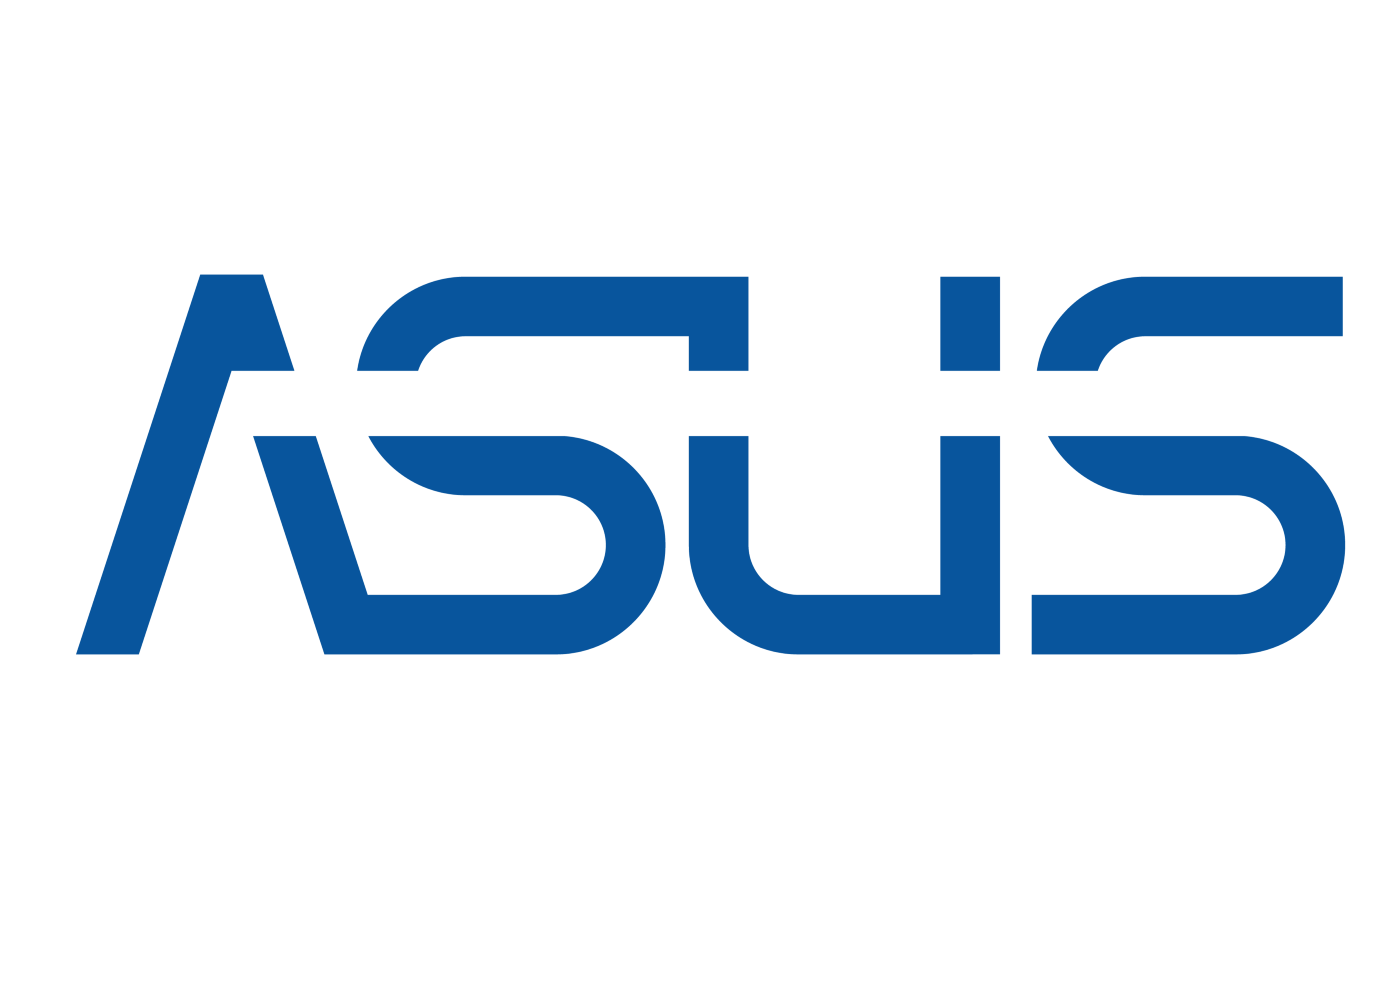 JWD Logo - Fixing the ASUS Logo